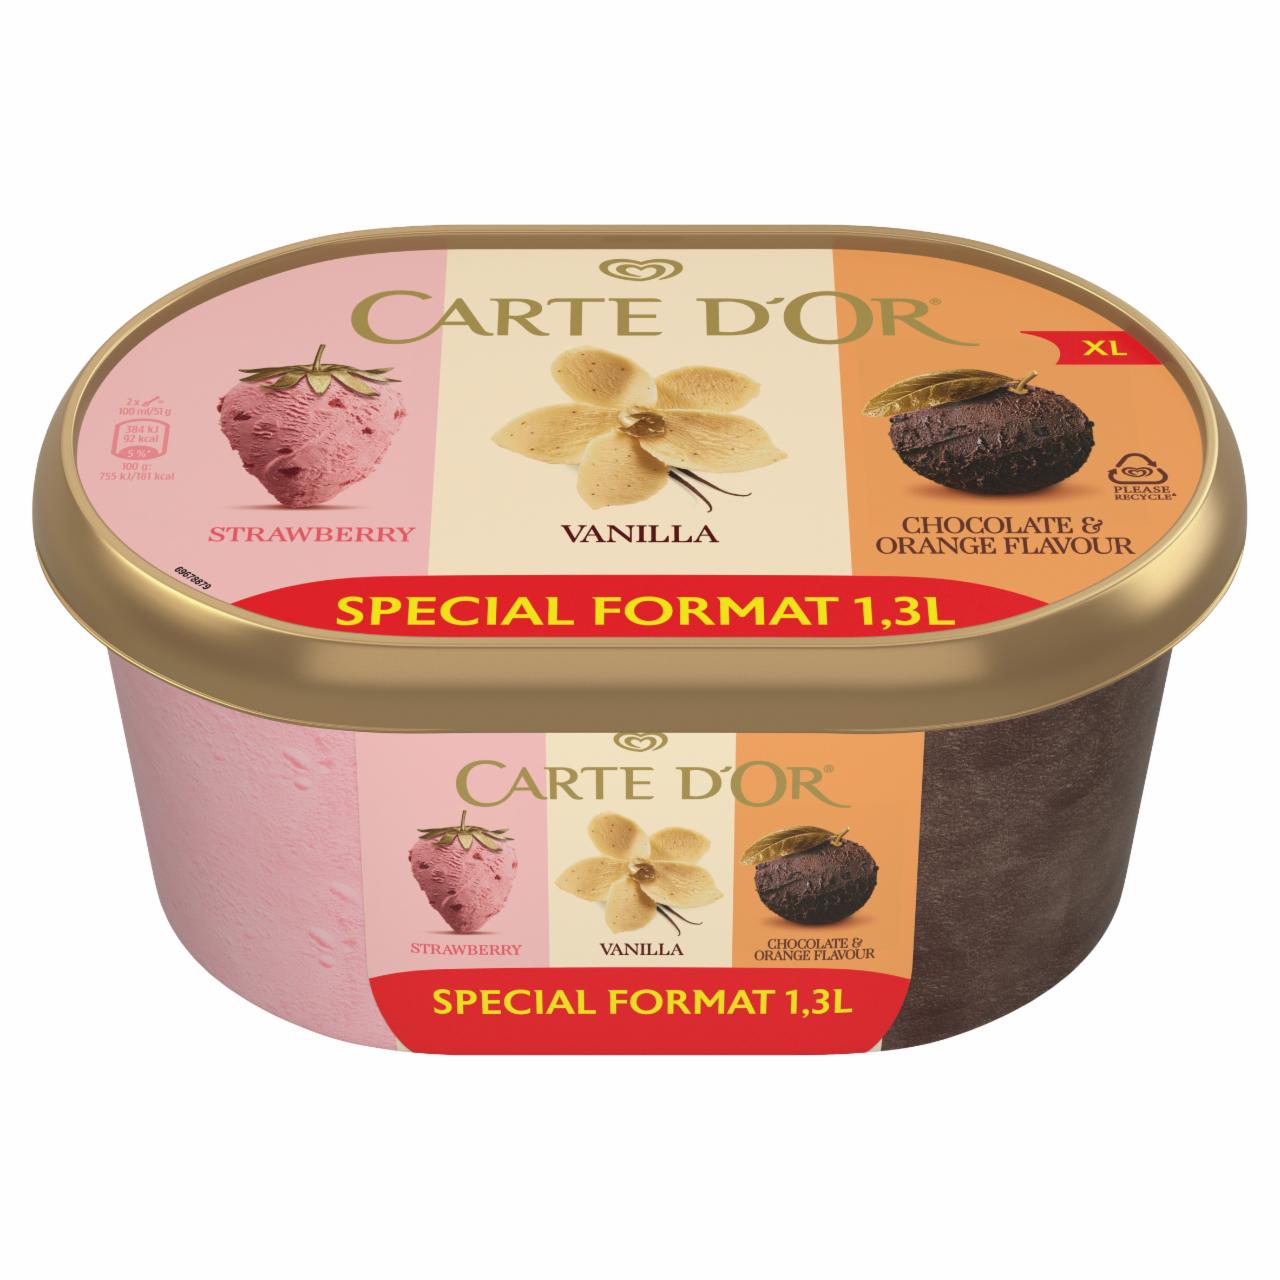 Képek - Carte d'Or epres jégkrém, vaníliás jégkrém és narancs ízű csokoládés jégkrém 1300 ml